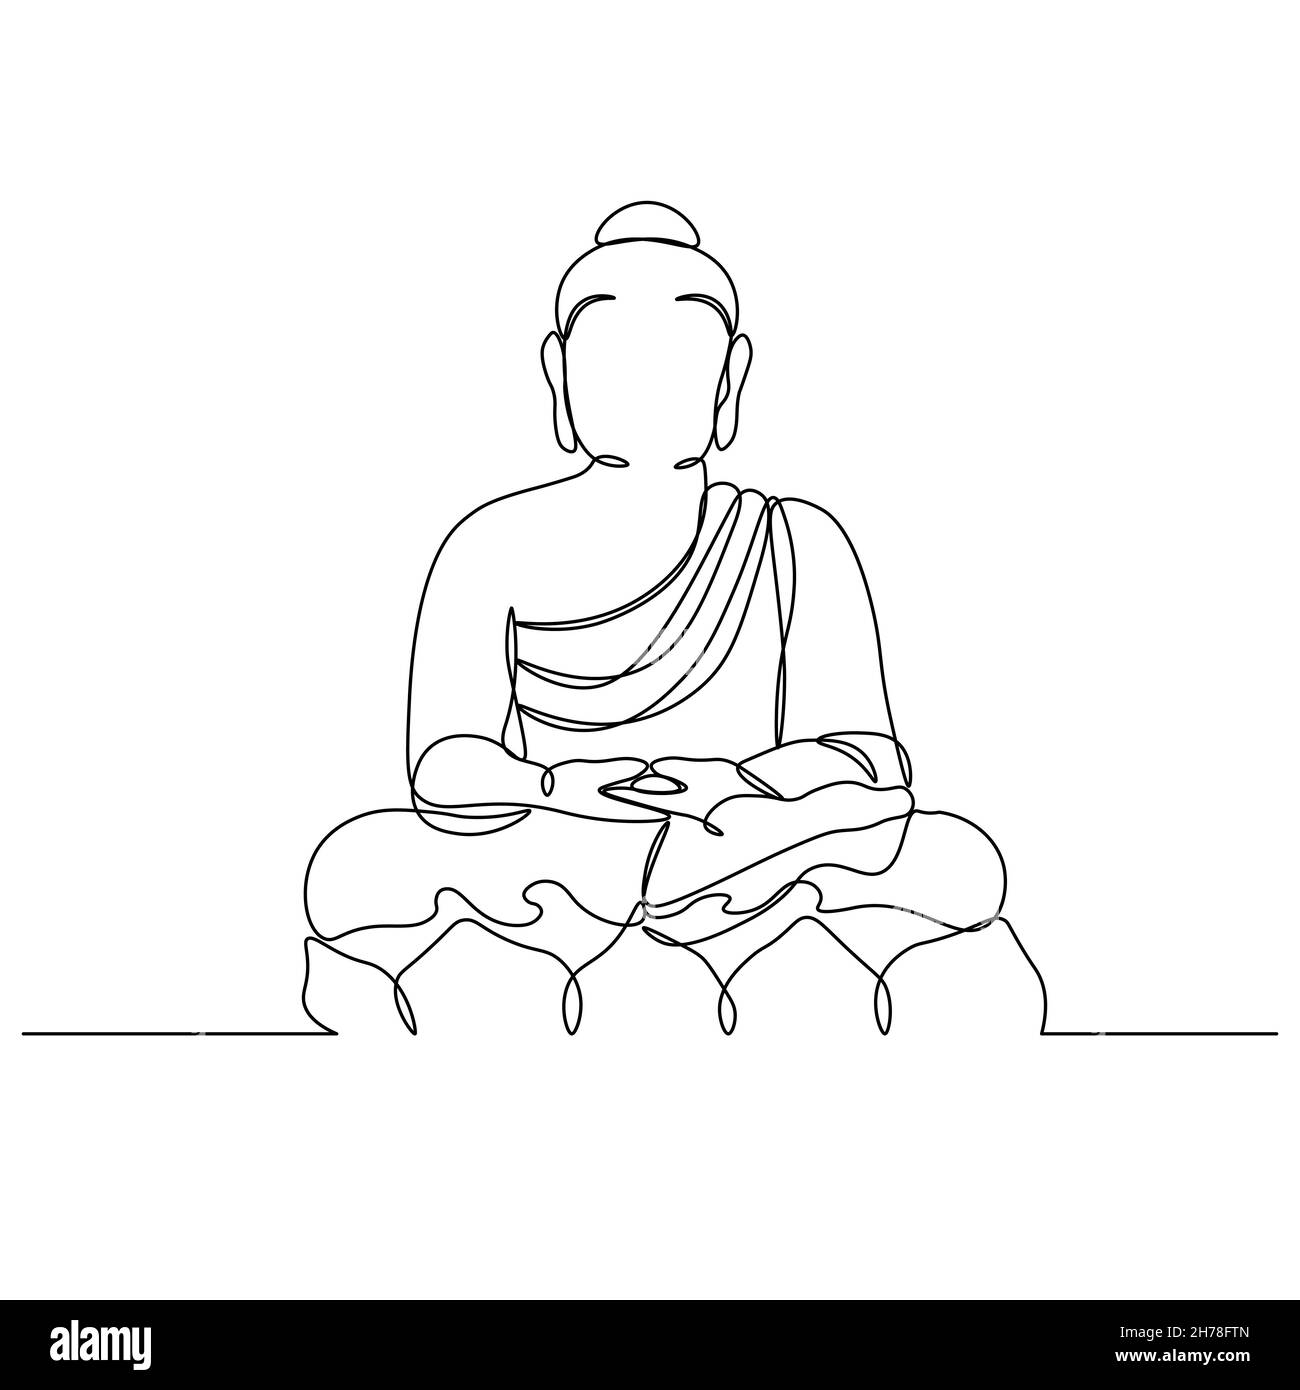 Silhouette de Bouddha - dessins à une ligne.Religion symbole de l'hindouisme, du bouddhisme, de la spiritualité et de l'illumination.Dessin avec une seule ligne, impression Illustration de Vecteur